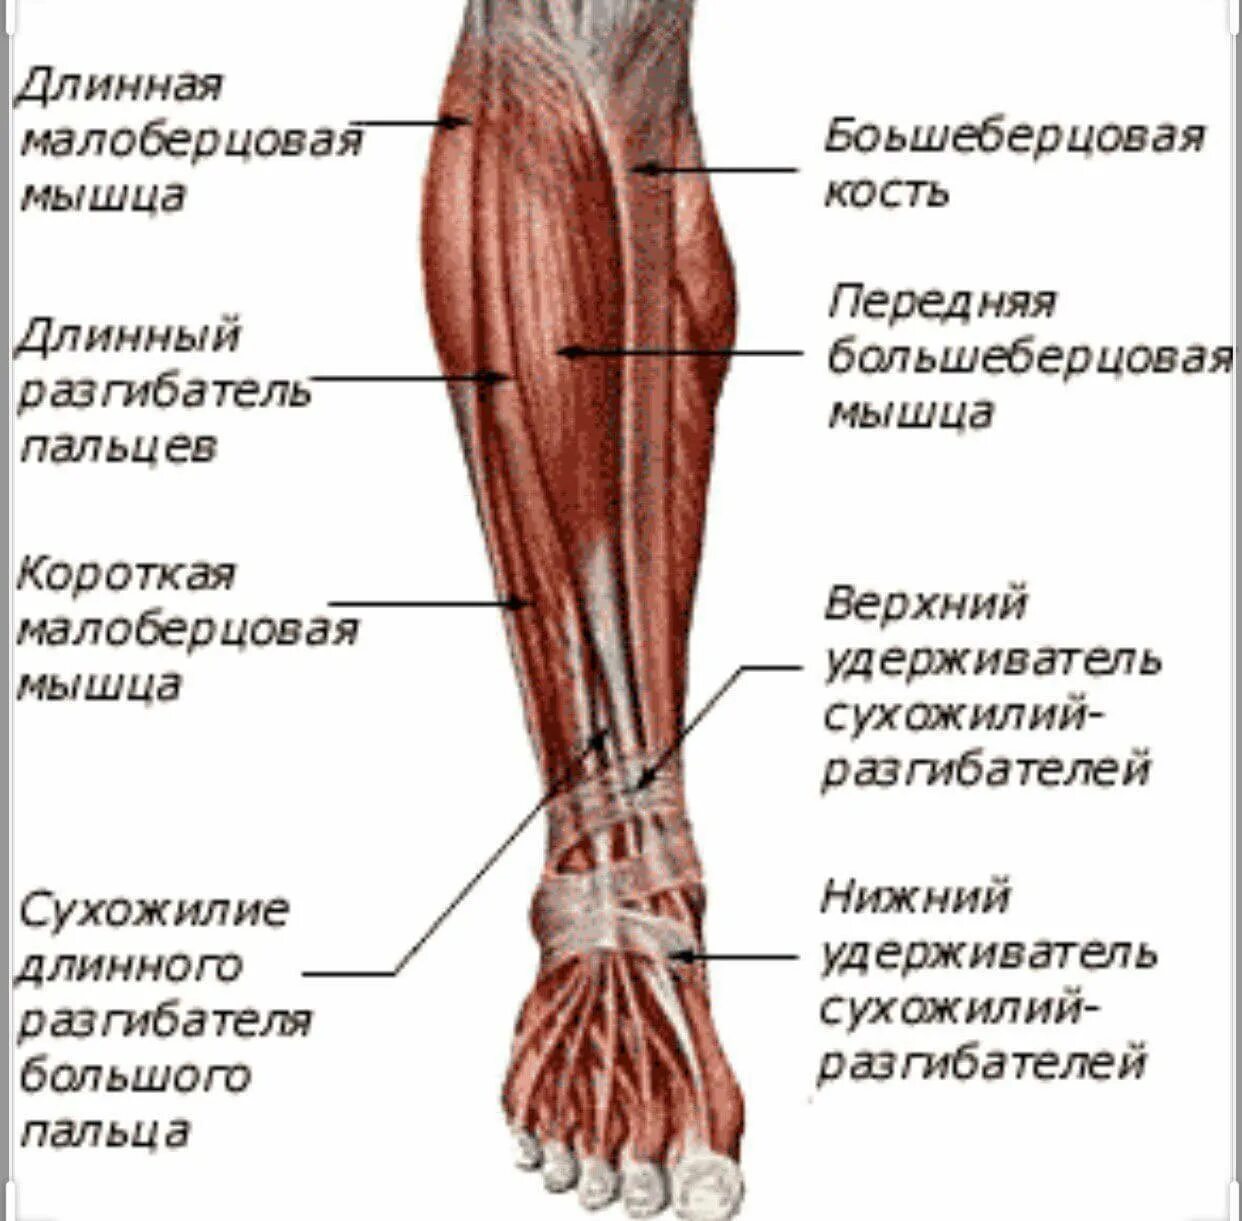 Строение ноги до колена. Разгибатель пальцев анатомия. Мышцы бедра ,голени нижней конечности. Длинный разгибатель пальцев голени анатомия. Передняя большеберцовая мышца мышца.